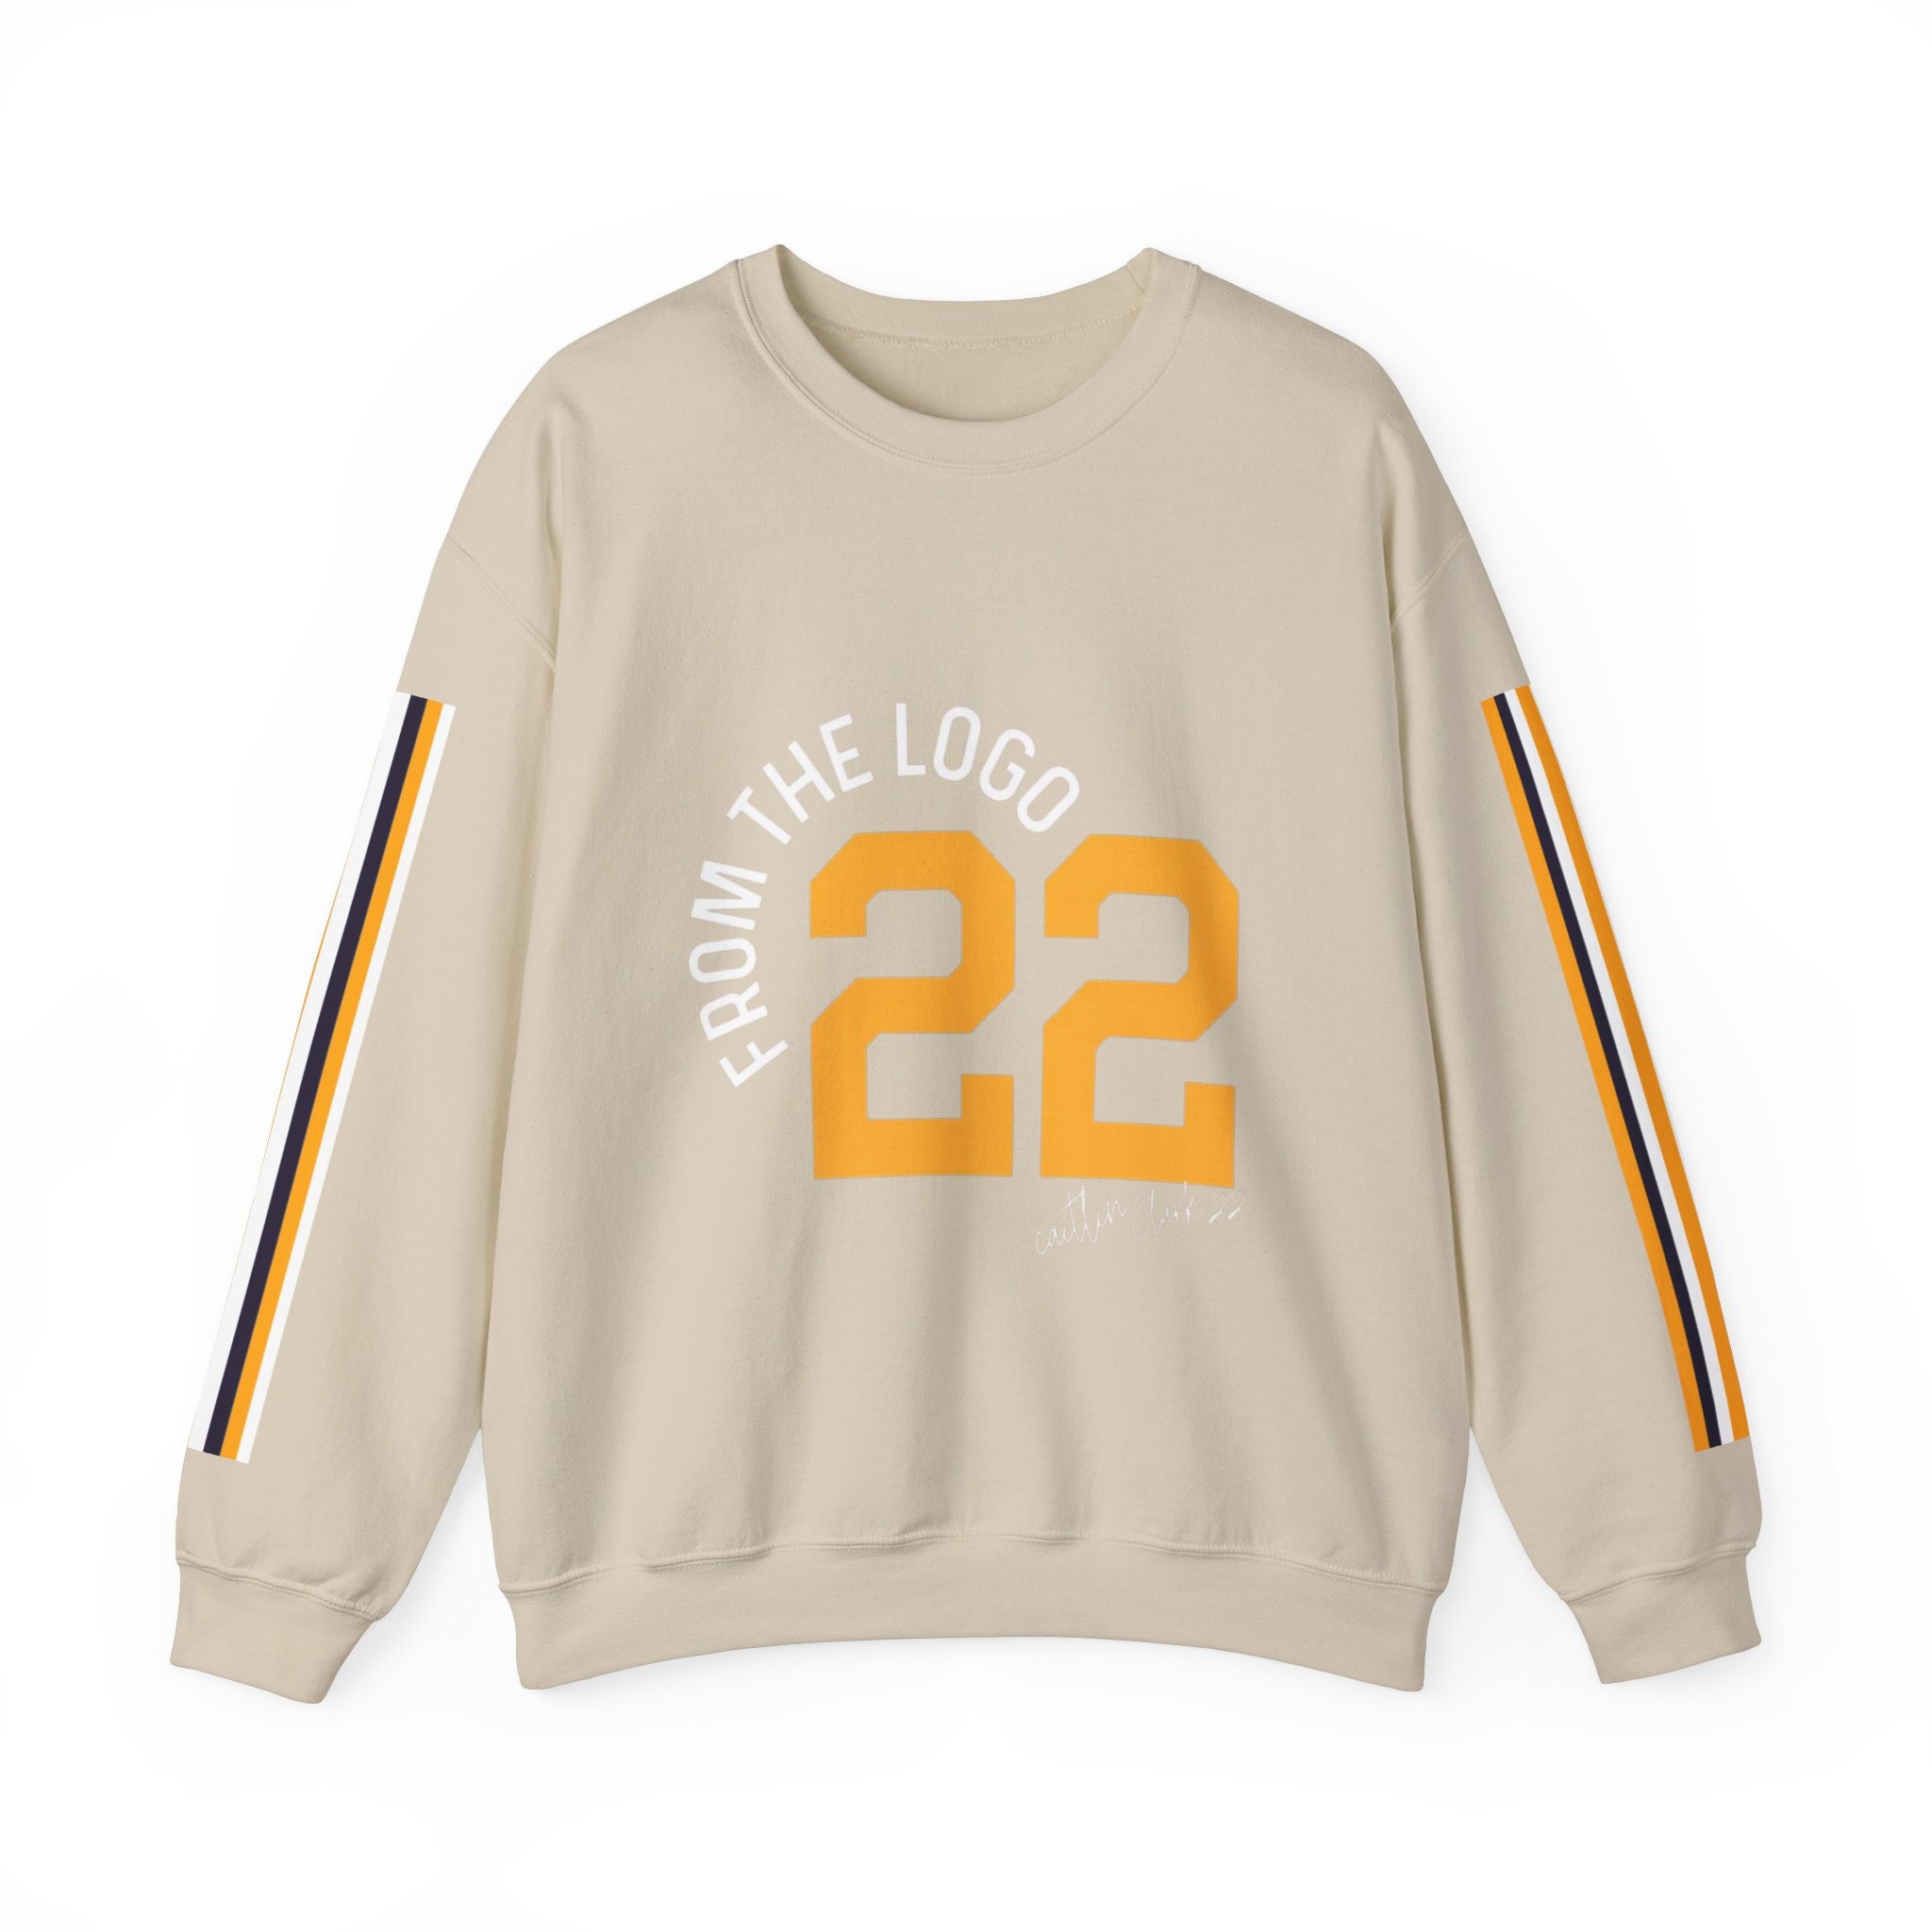 22 Caitlin Clark Shirt, Caitlin Clark Basketball Shirt, Caitlin Clark Fan Shirt